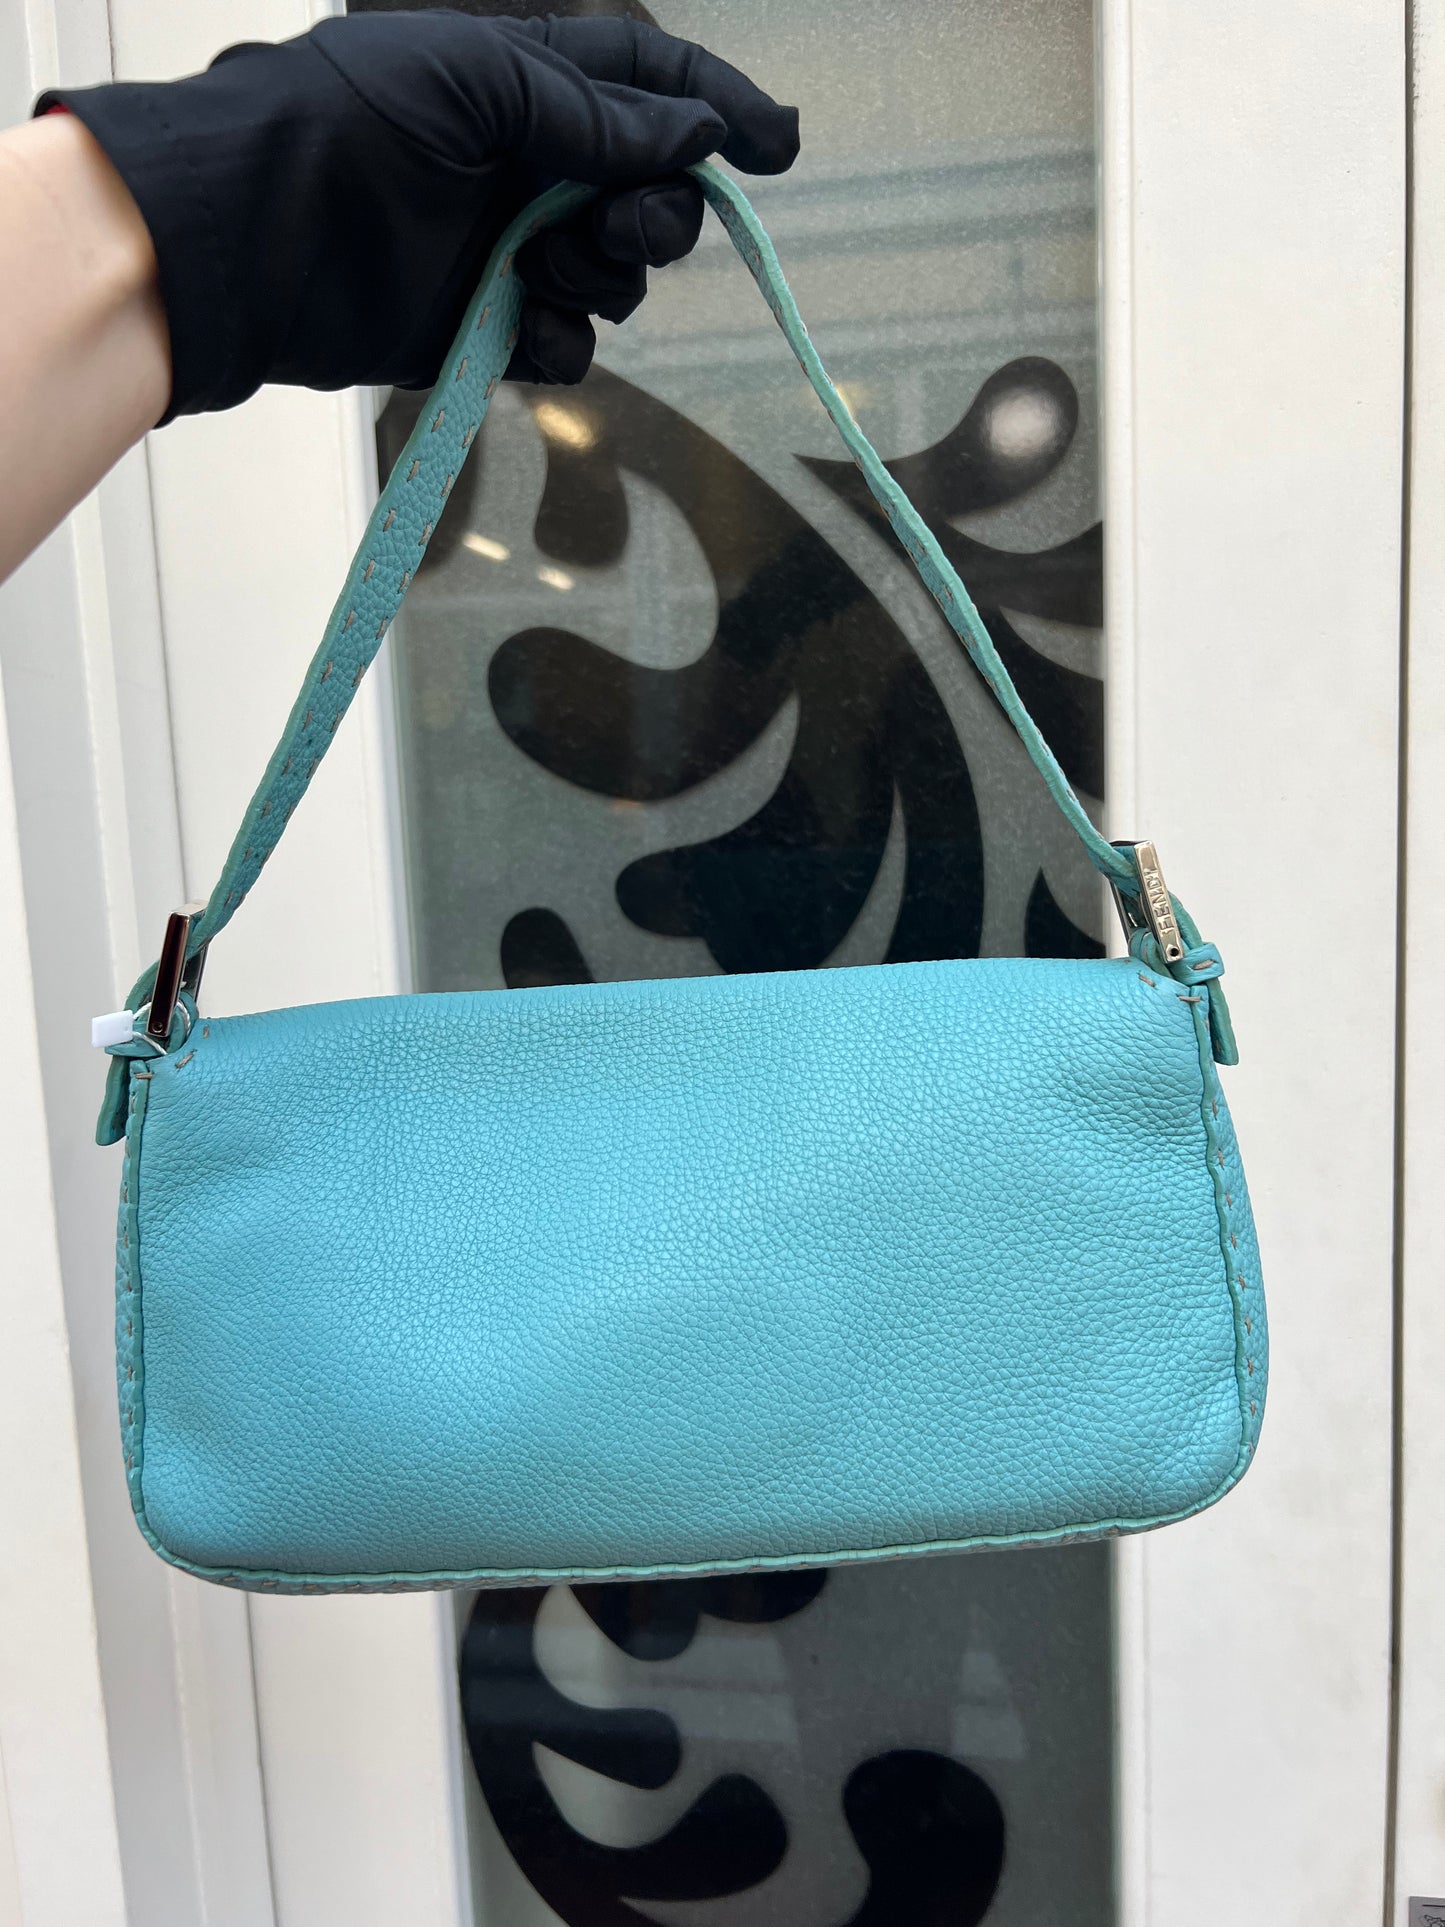 Pre-loved Fendi Vintage Blue Leather Baguette Handbag